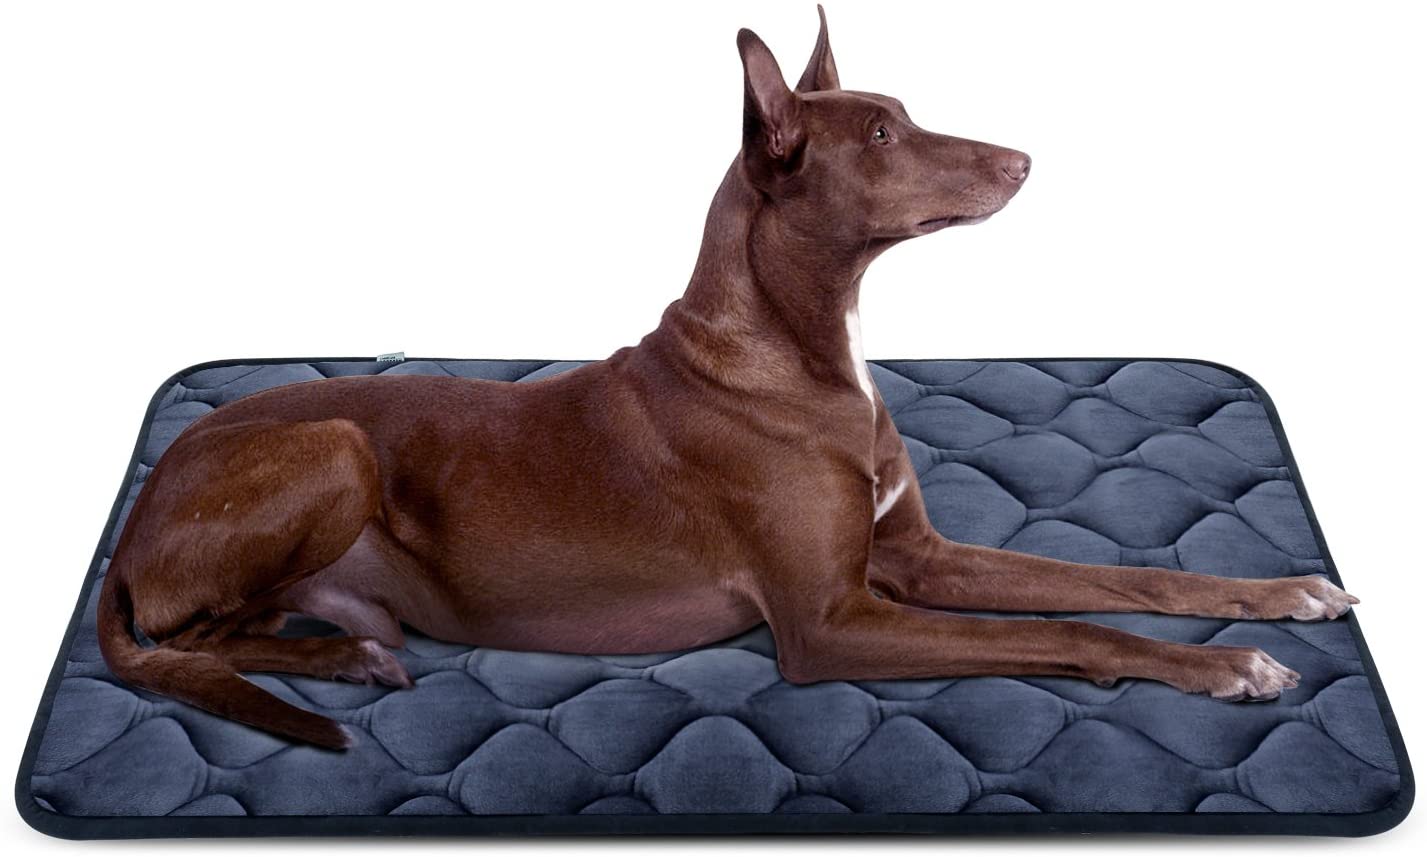  Hero Dog Cama Colchoneta Perro Grande Lavable L, Cojines para Mascotas Antideslizante Vellón Almohadilla Suave 107x70 cm 